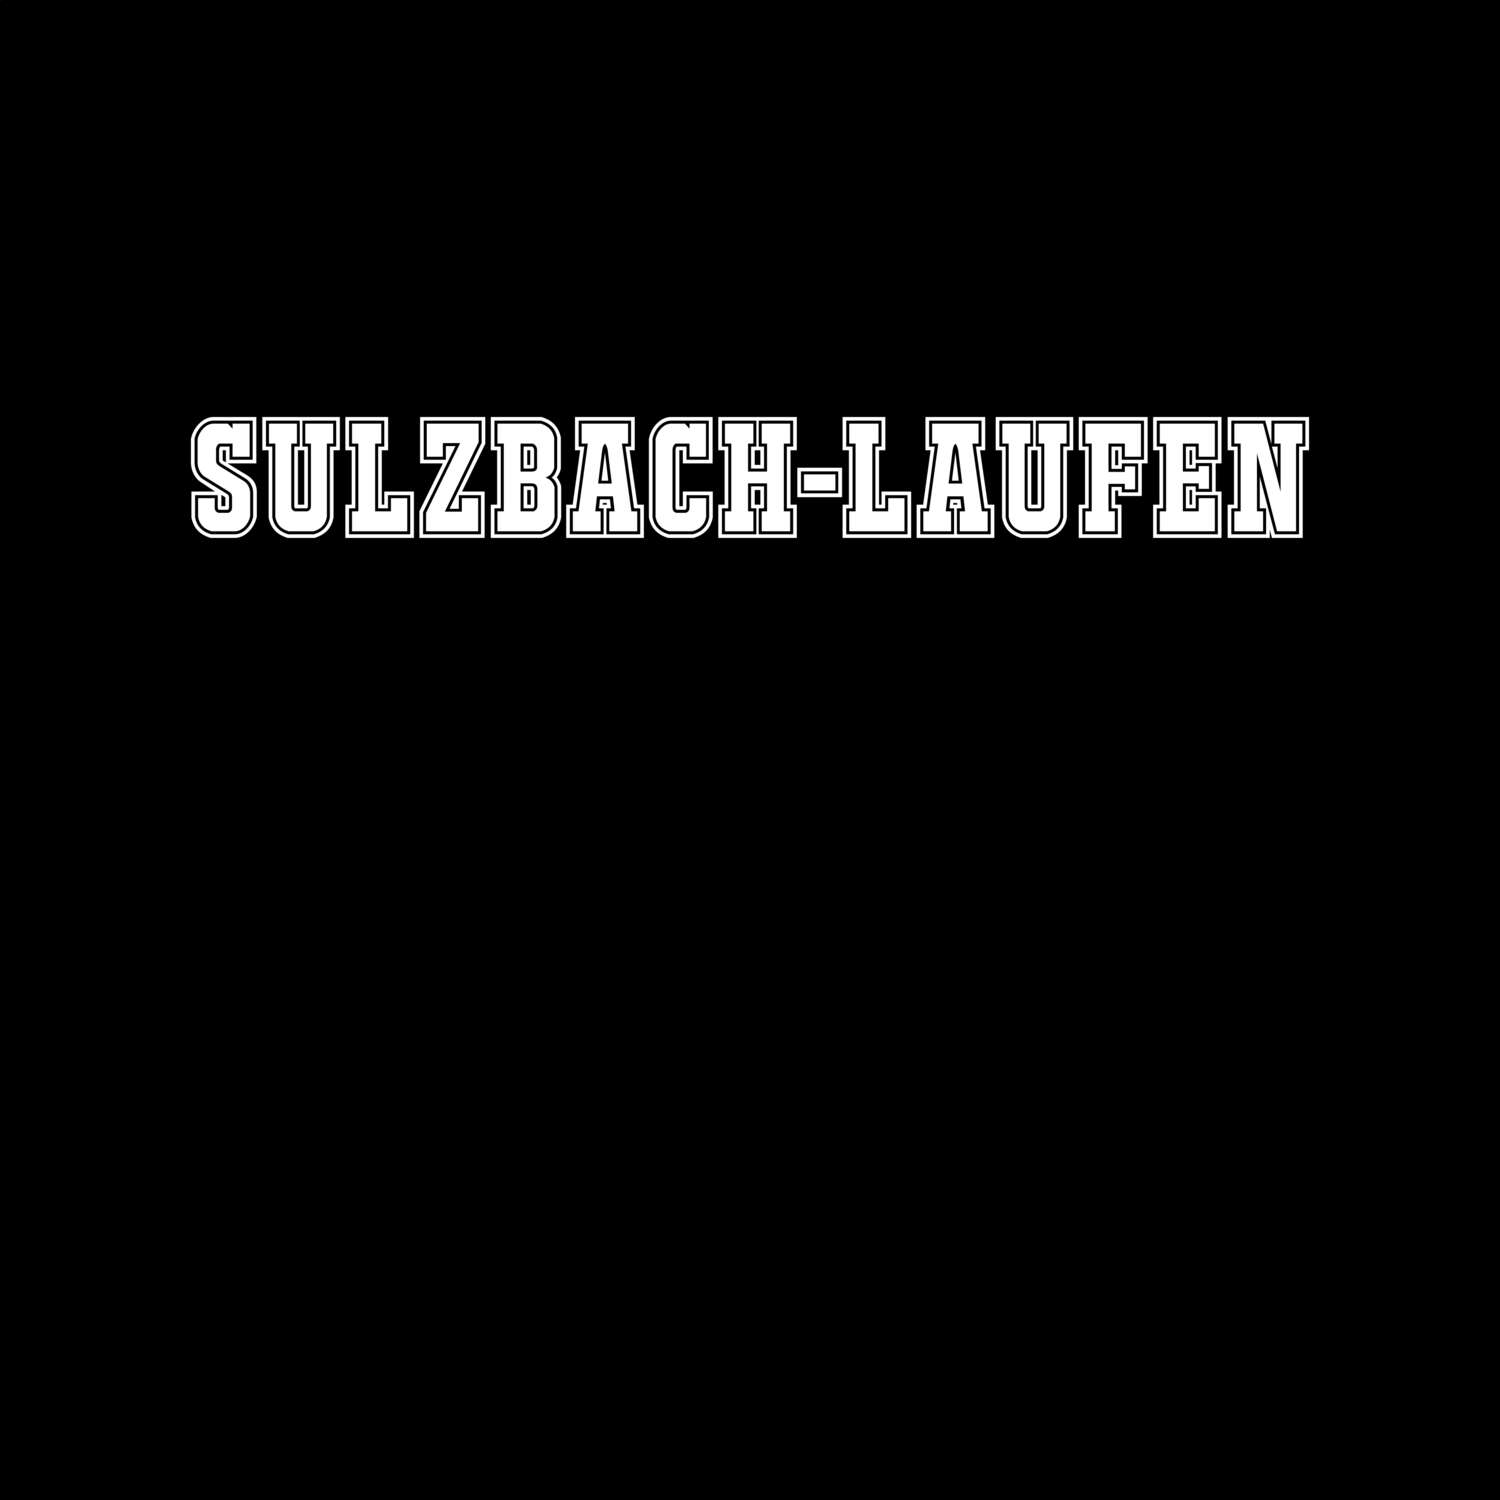 Sulzbach-Laufen T-Shirt »Classic«